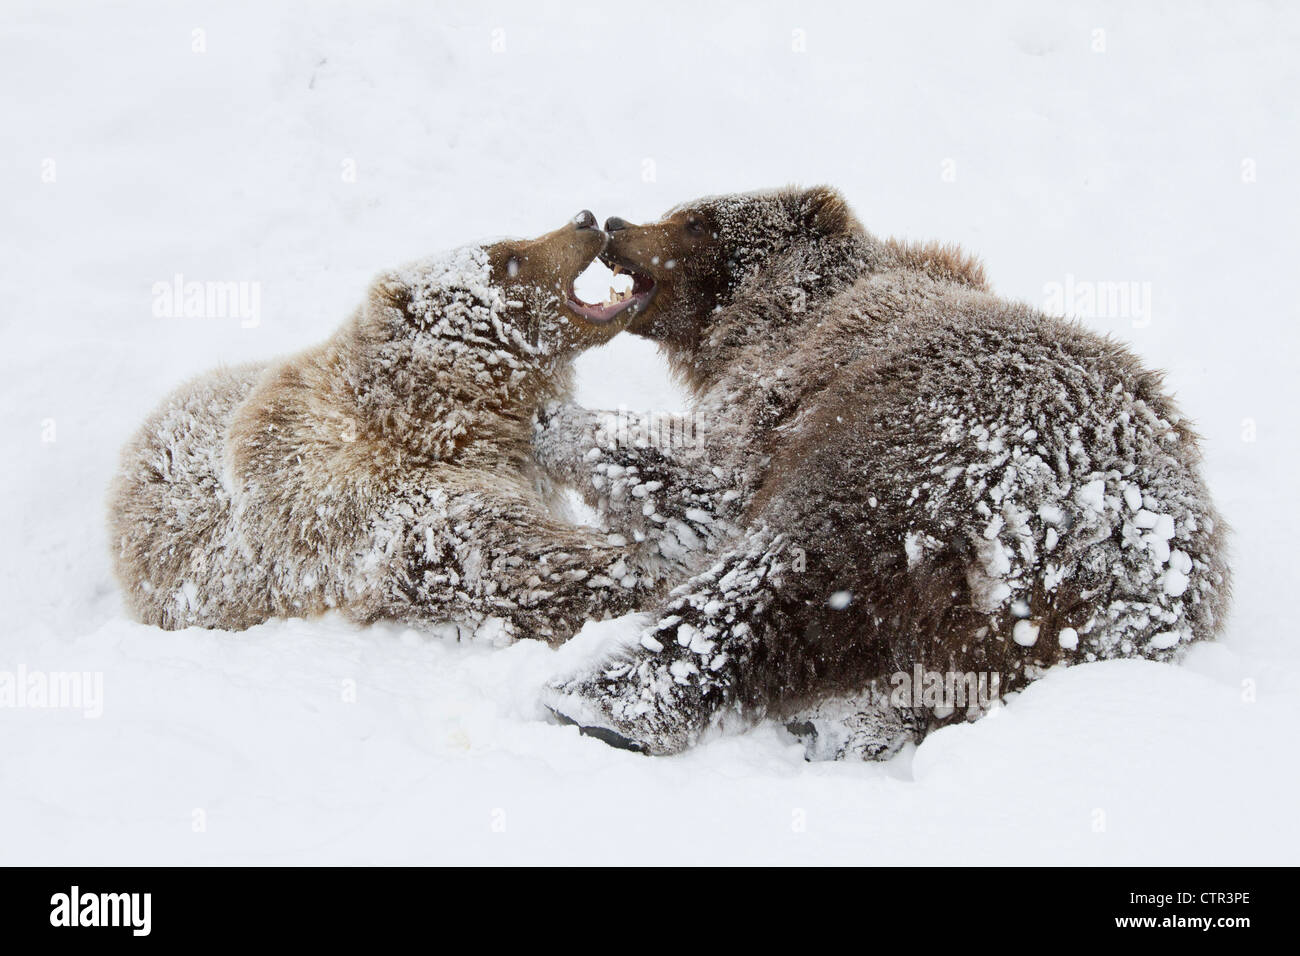 Cautivo: jóvenes mujeres hombres osos pardos juegan juntos en la nieve Centro de Conservación de la vida silvestre de Alaska Alaska Southcentral invierno Foto de stock